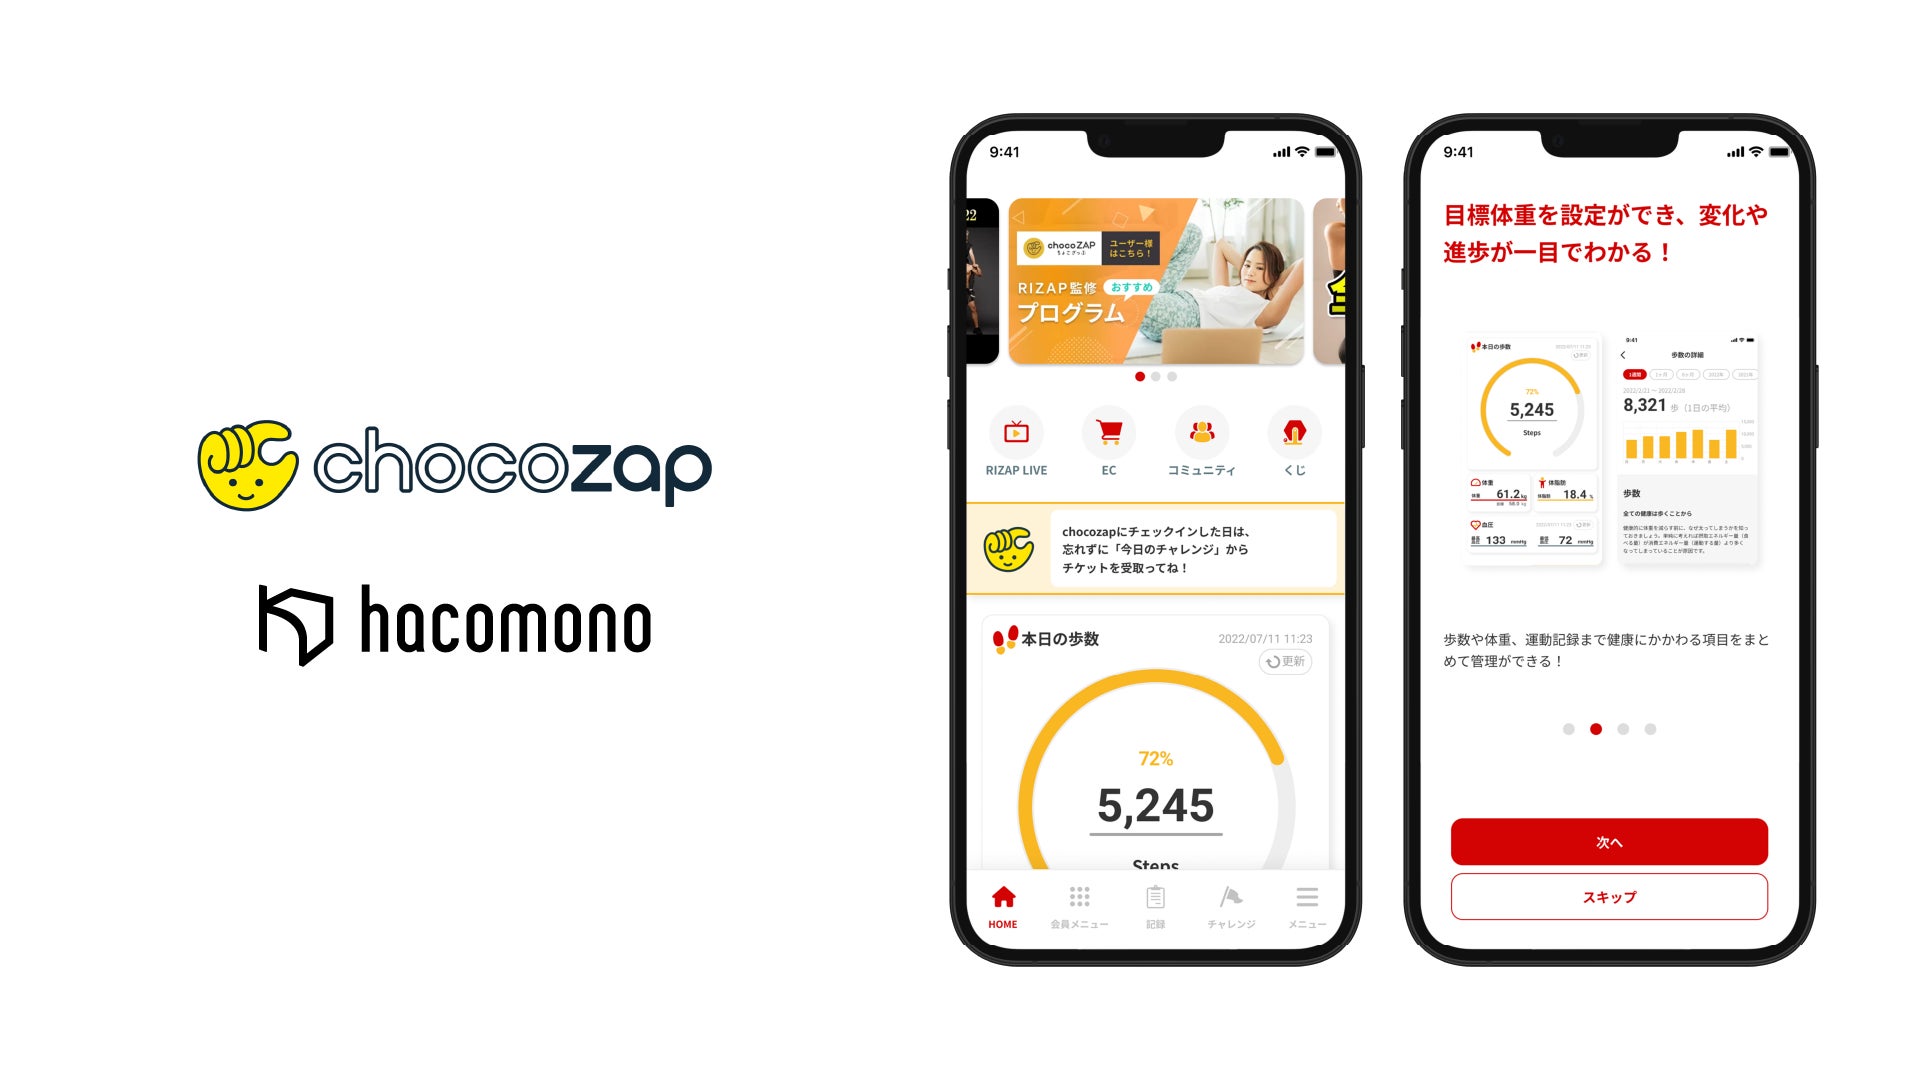 RIZAPが新モデル「chocozap」に会員管理・予約・決済基盤として「hacomono」を採用し、オリジナルアプリを自社開発